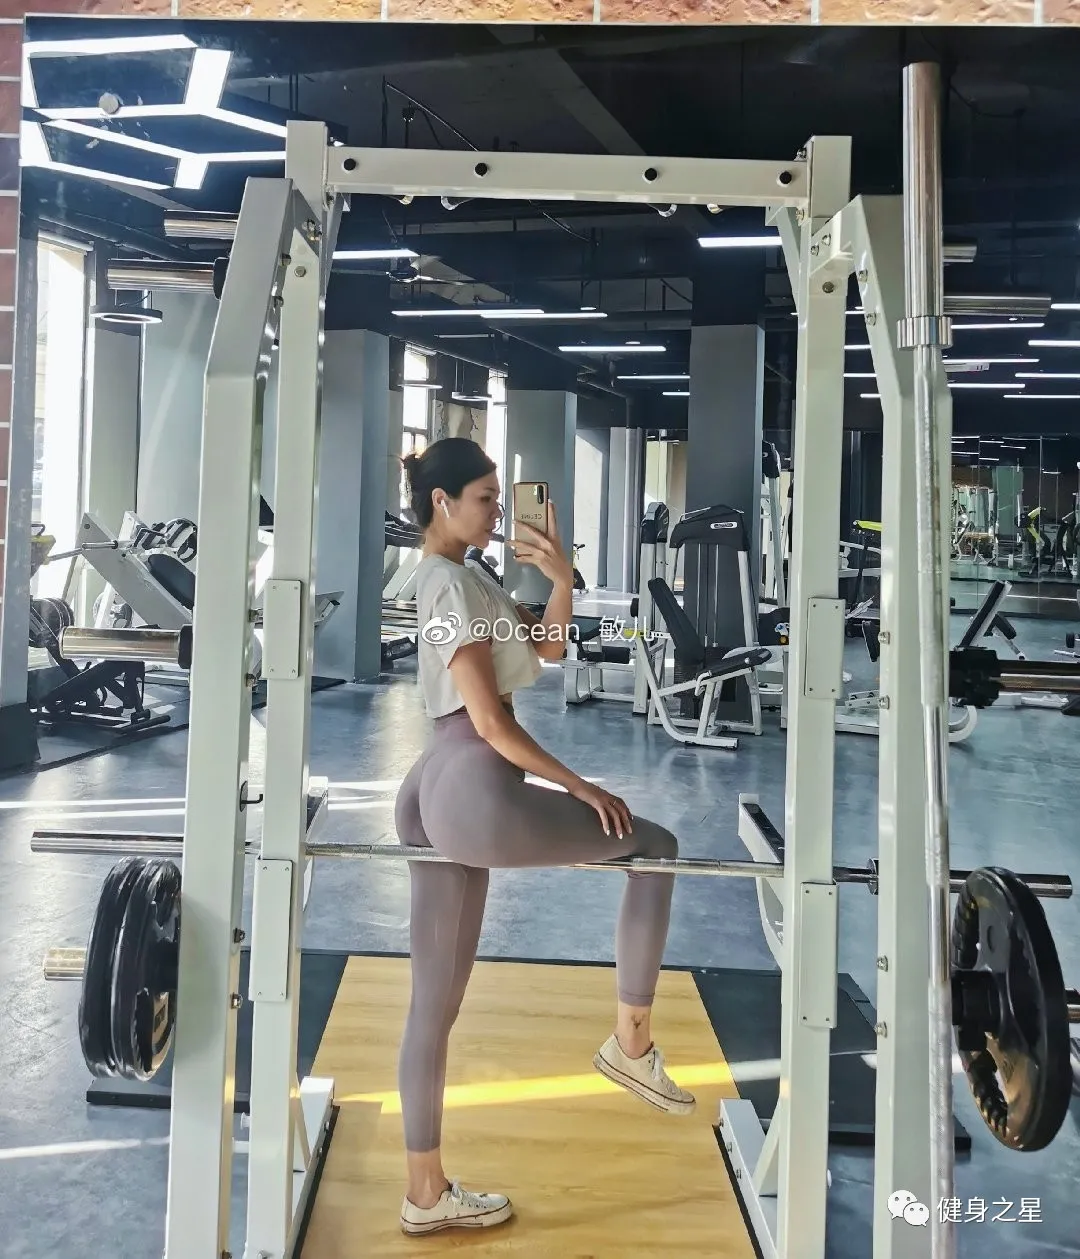 27歲的廣東女健身教練，身材健美有型，路上回頭率十足